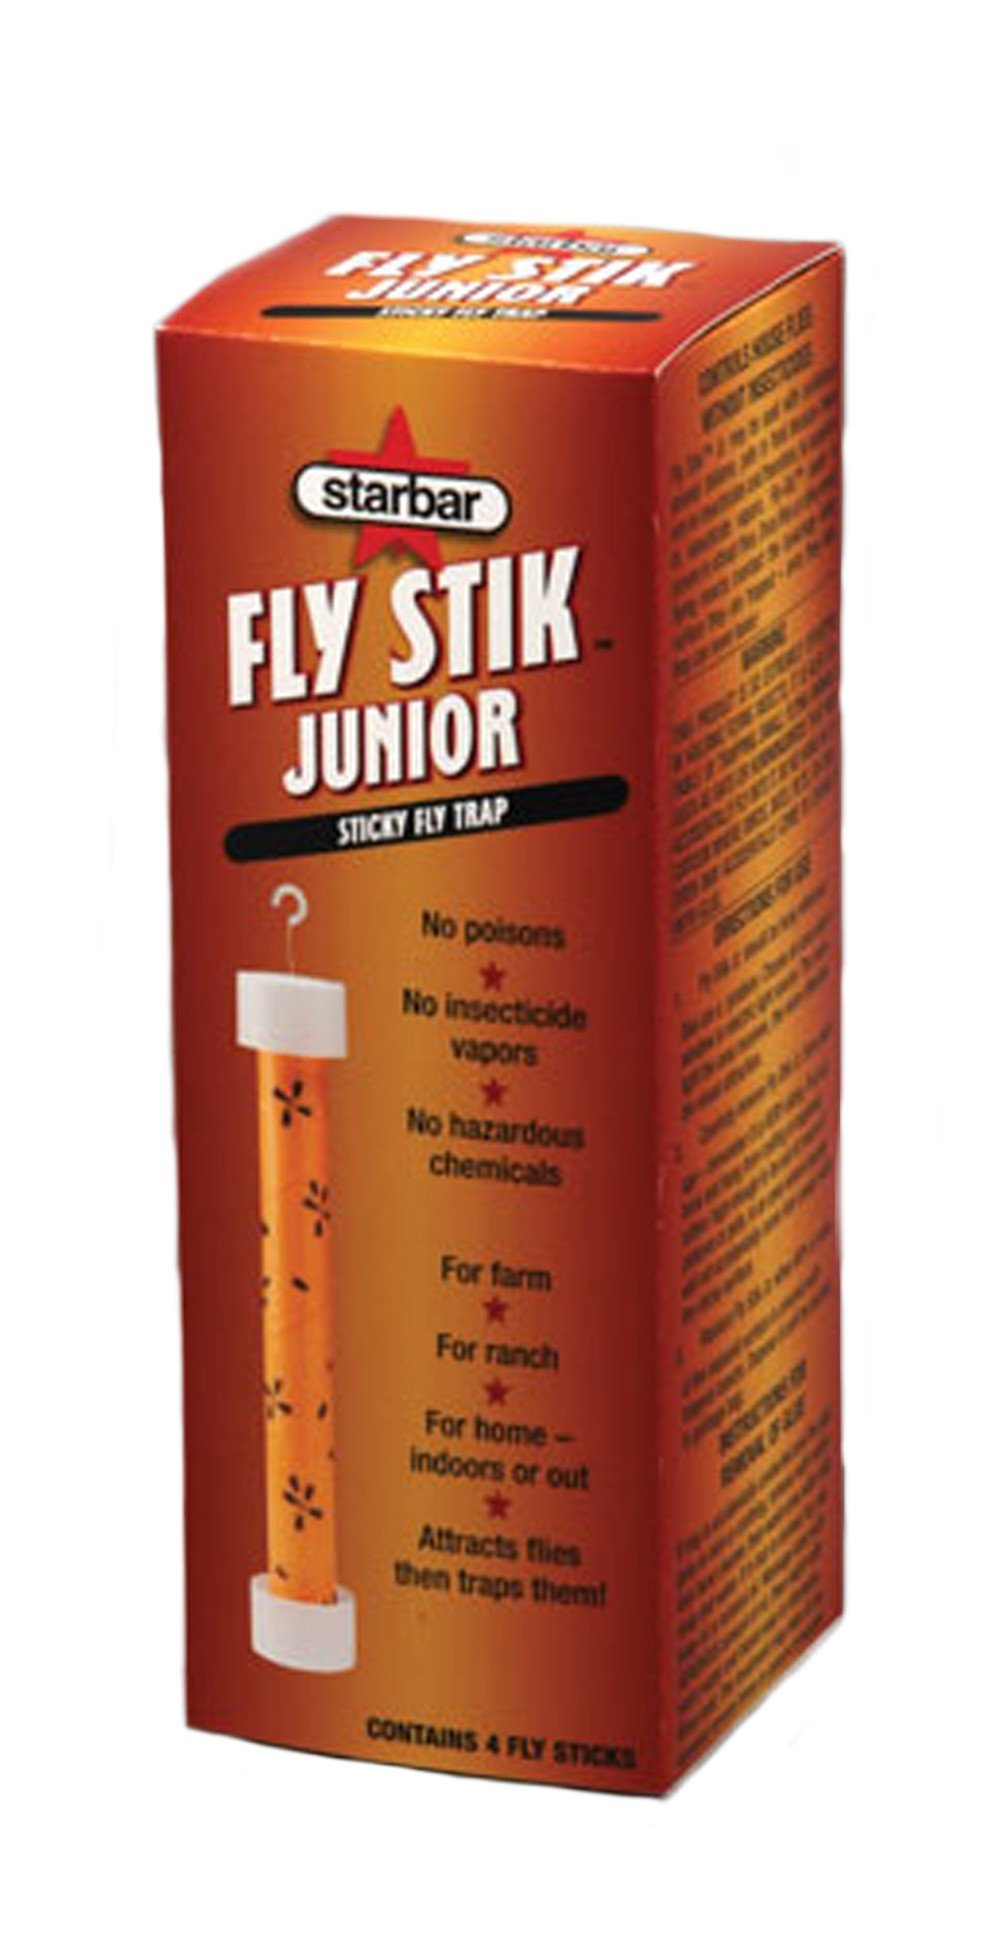 Starbar Fly Stik Jr. Sticky Fly Trap - 12